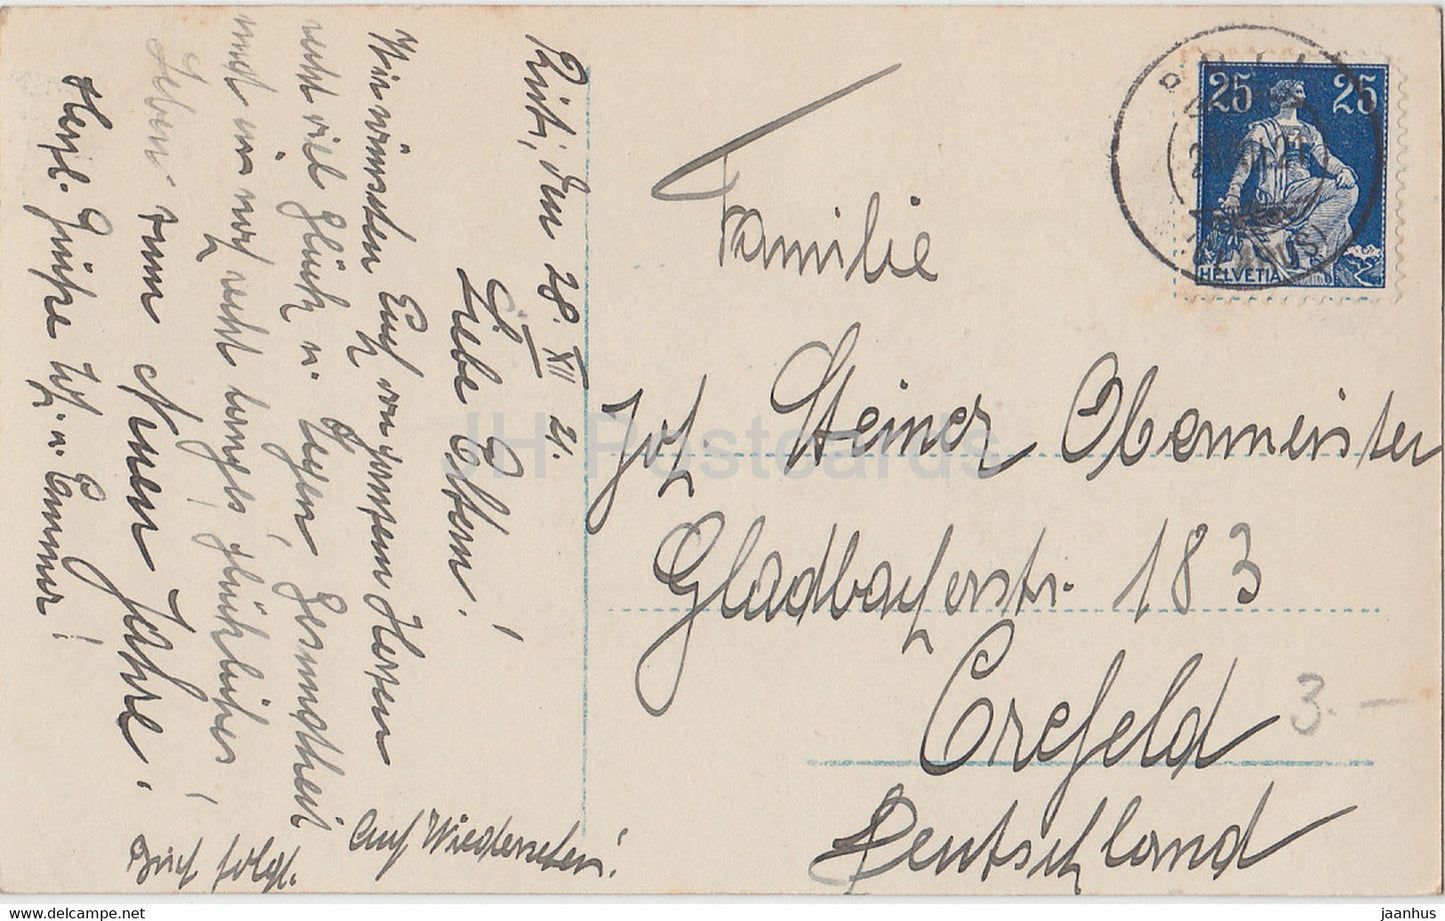 New Year Greeting Card - Die Besten Wunsche zum neuen Jahre - chldren NPG 7233/6 - old postcard - 1921 - Germany - used